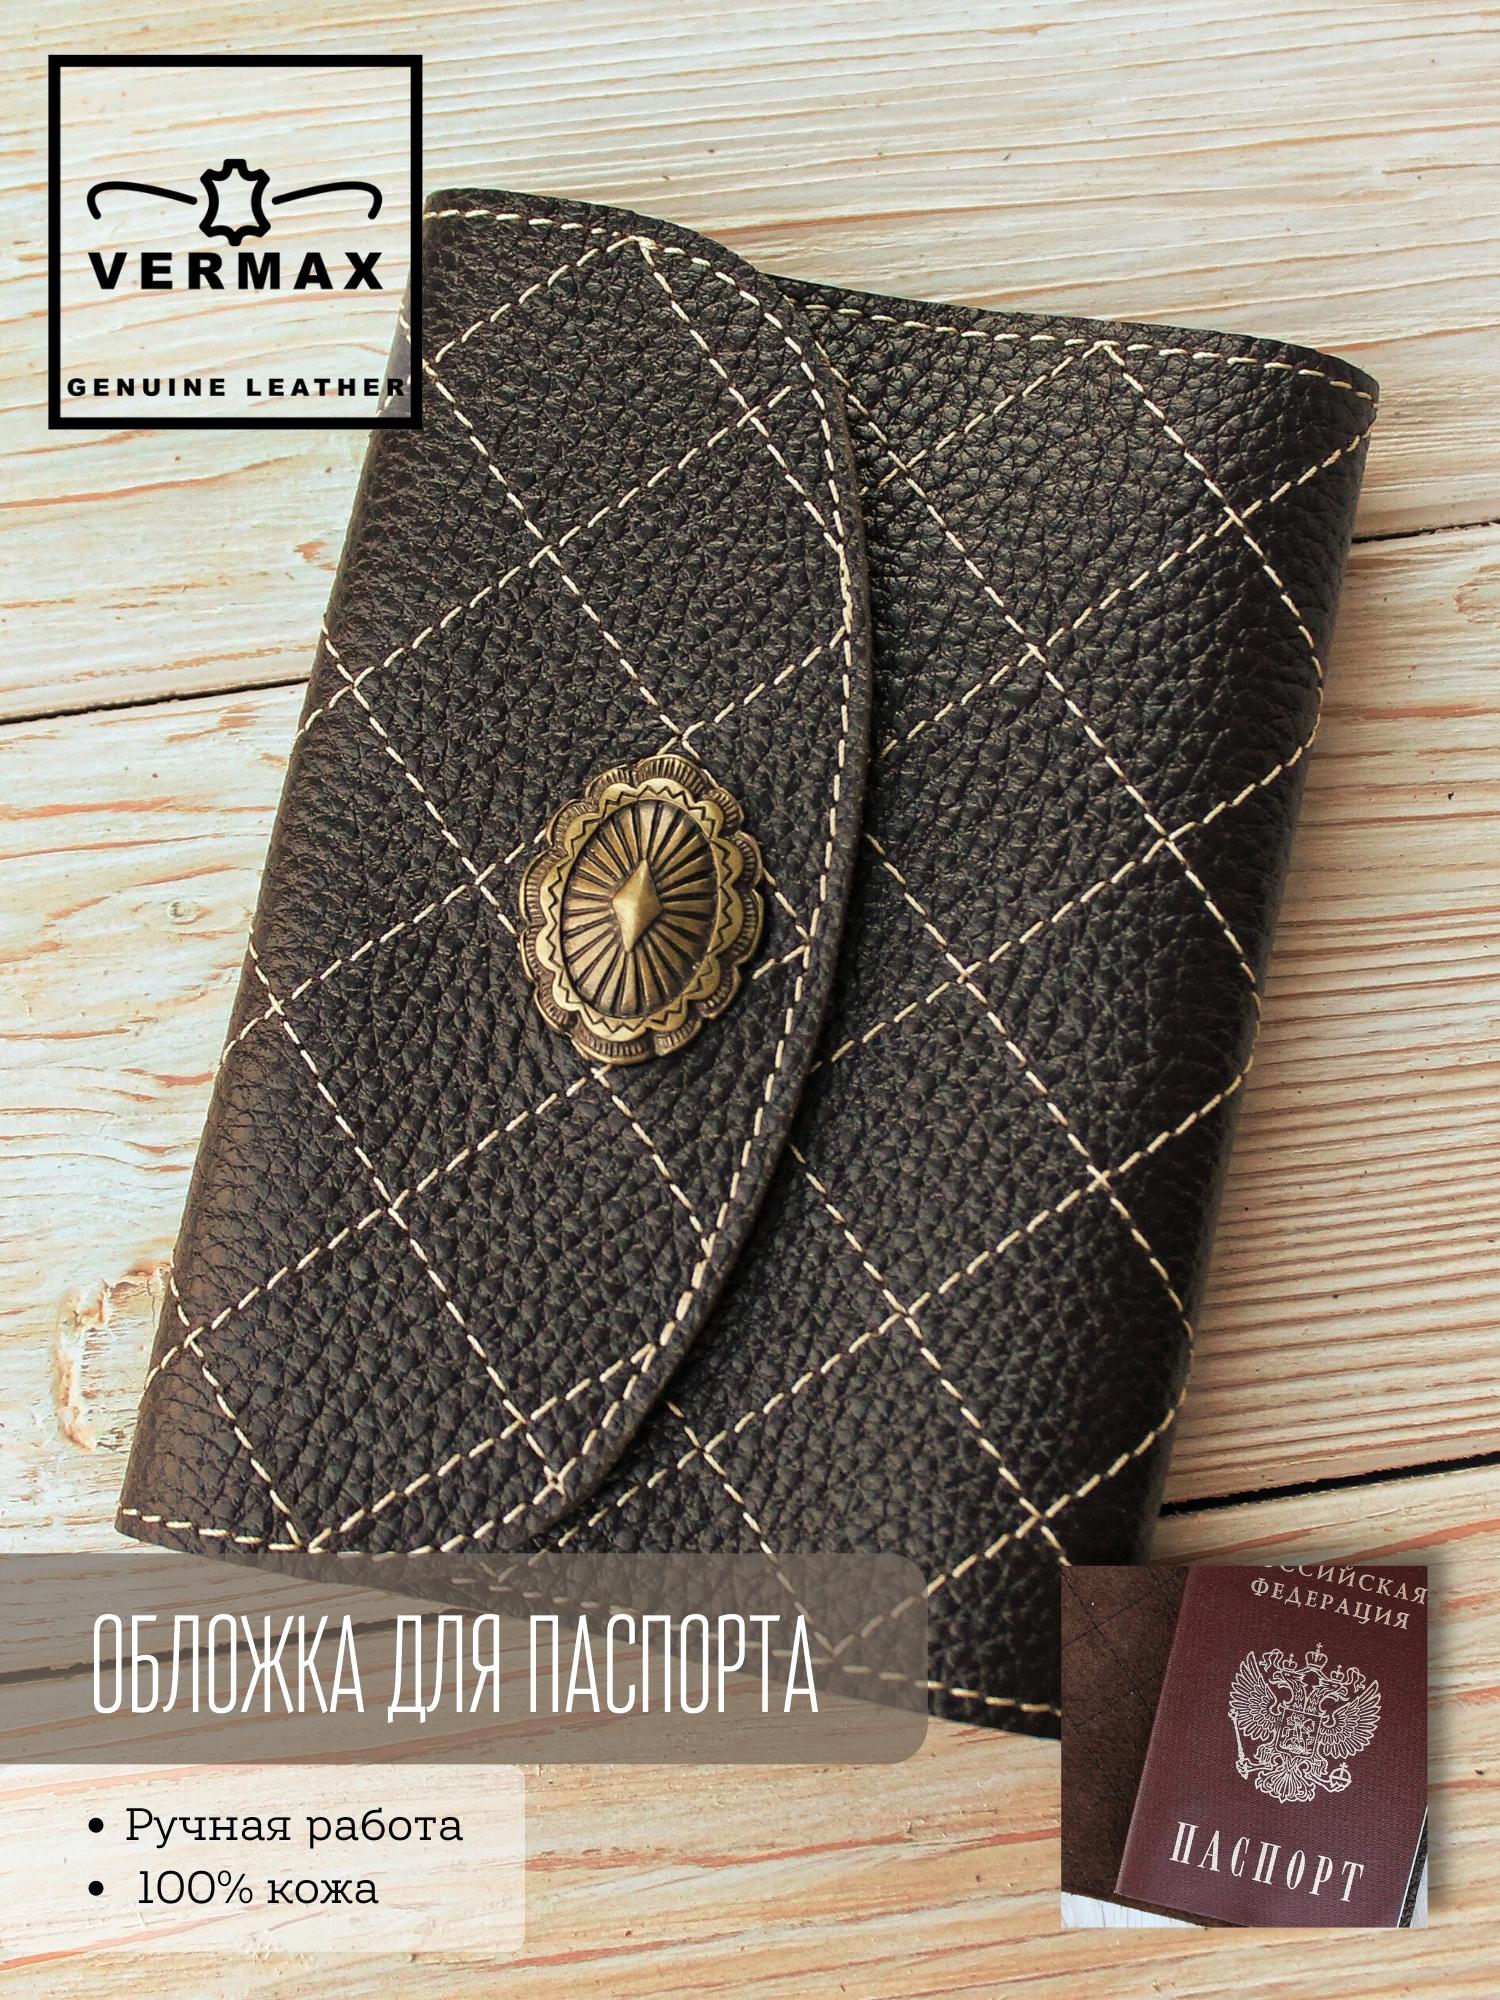 Обложка для паспорта женская Vermax 186 коричневая